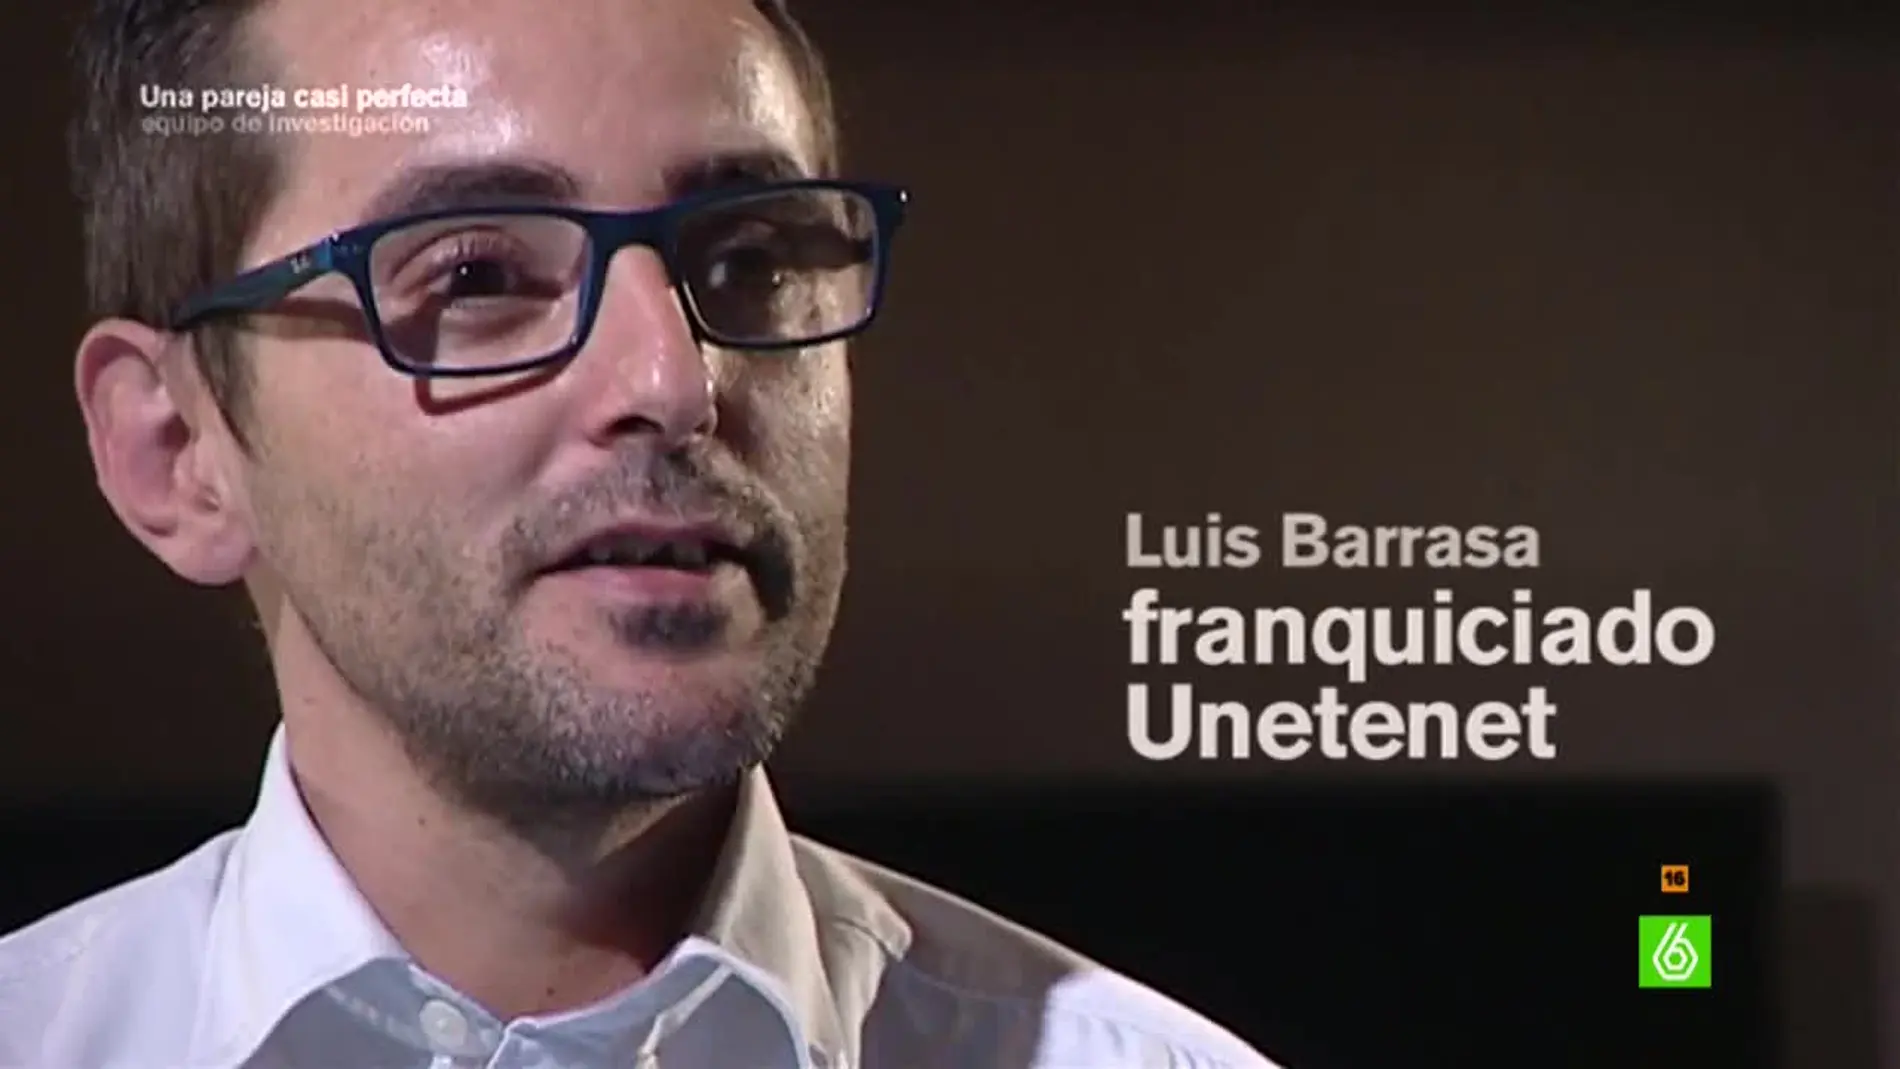 Luis Barrasa, franquiciado Unetenet